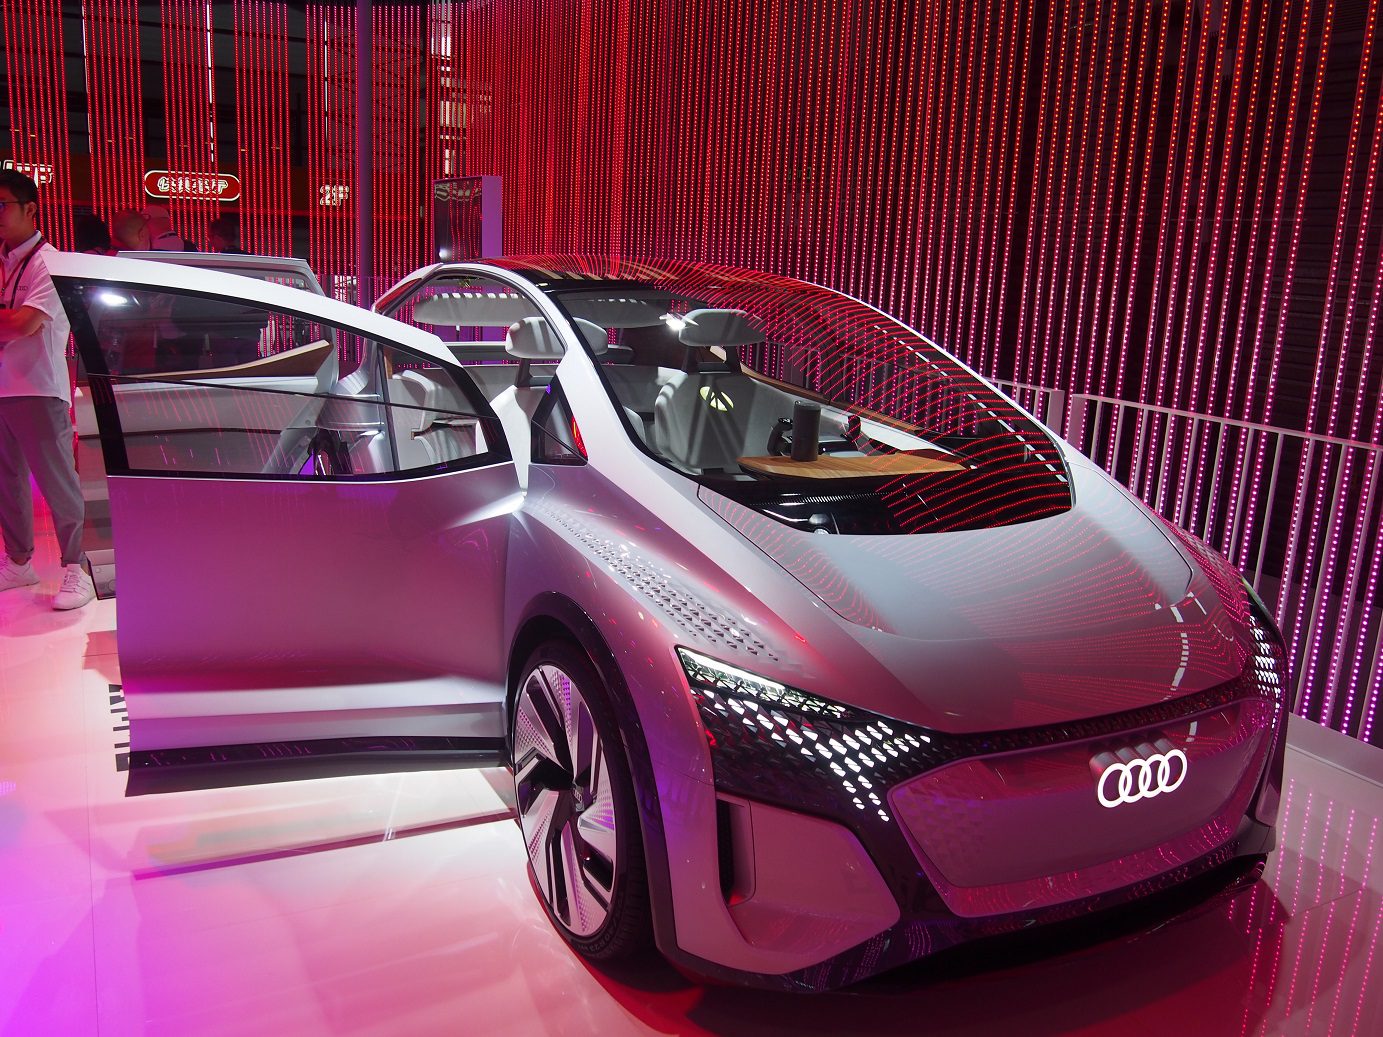 Štýlový model Audi so zabudovaným inteligentným asistentom